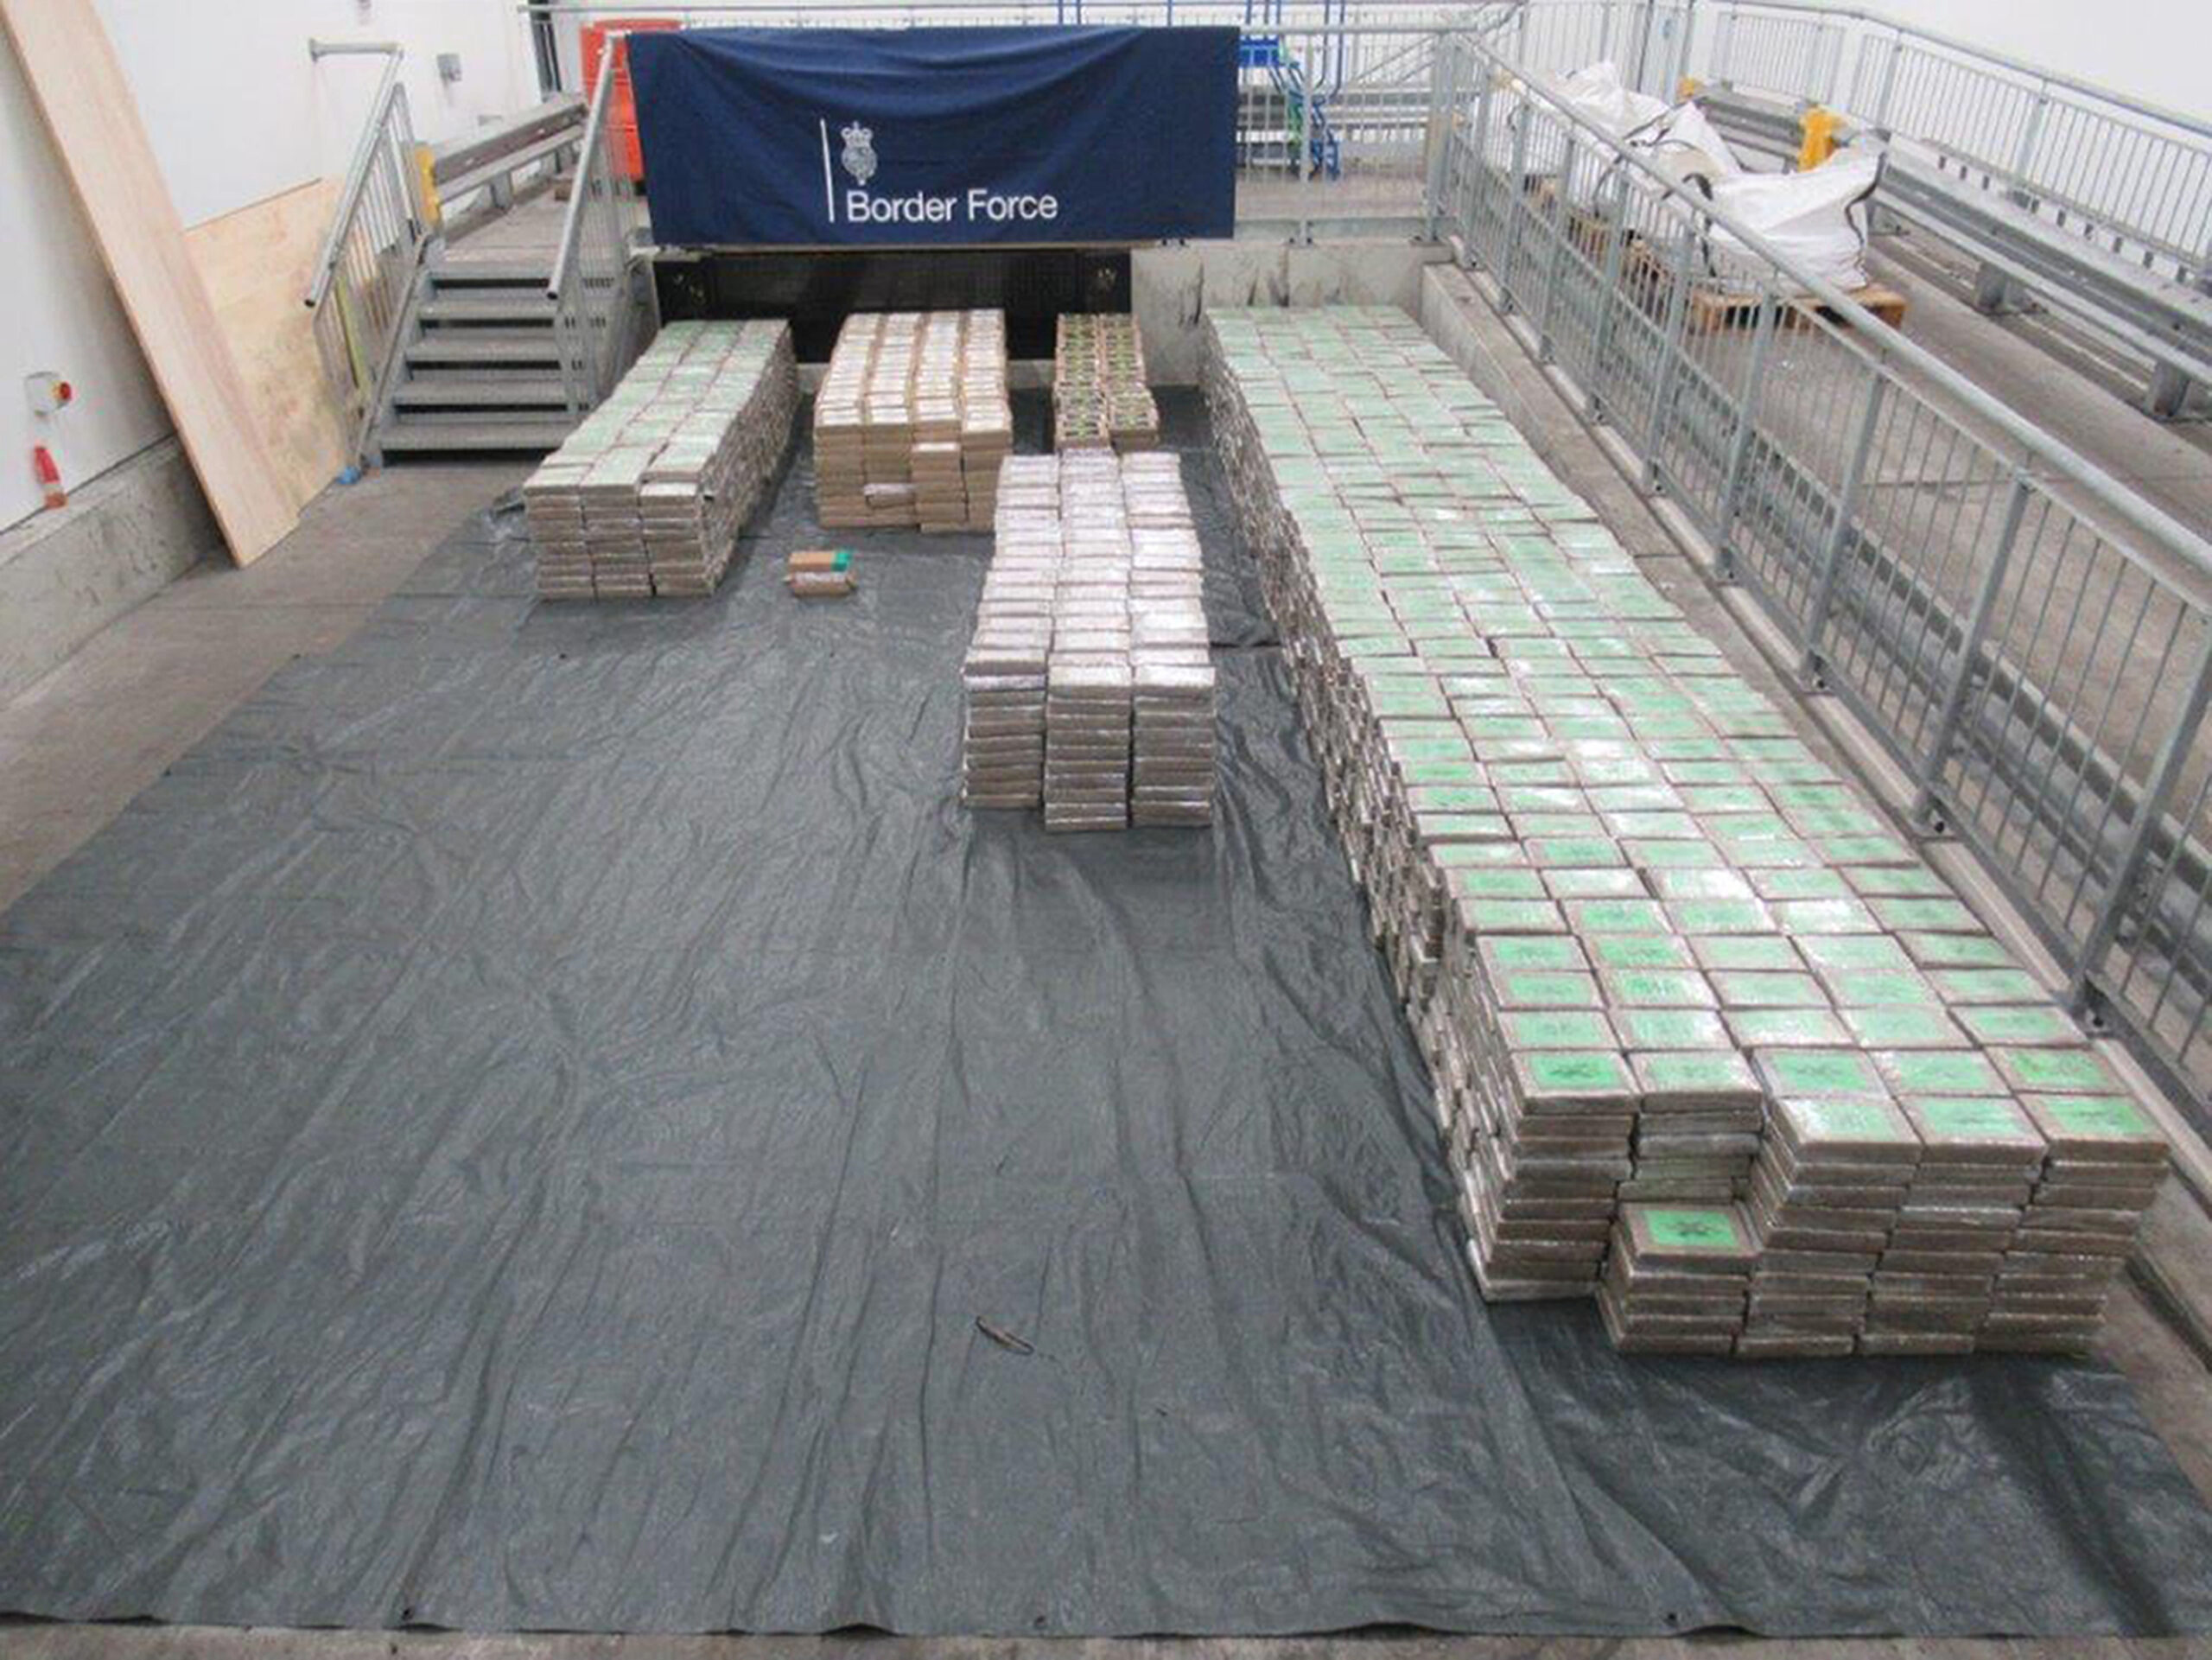 Die National Crime Agency stellte 5,7 Tonnen Kokain sicher – ein neuer Rekord.